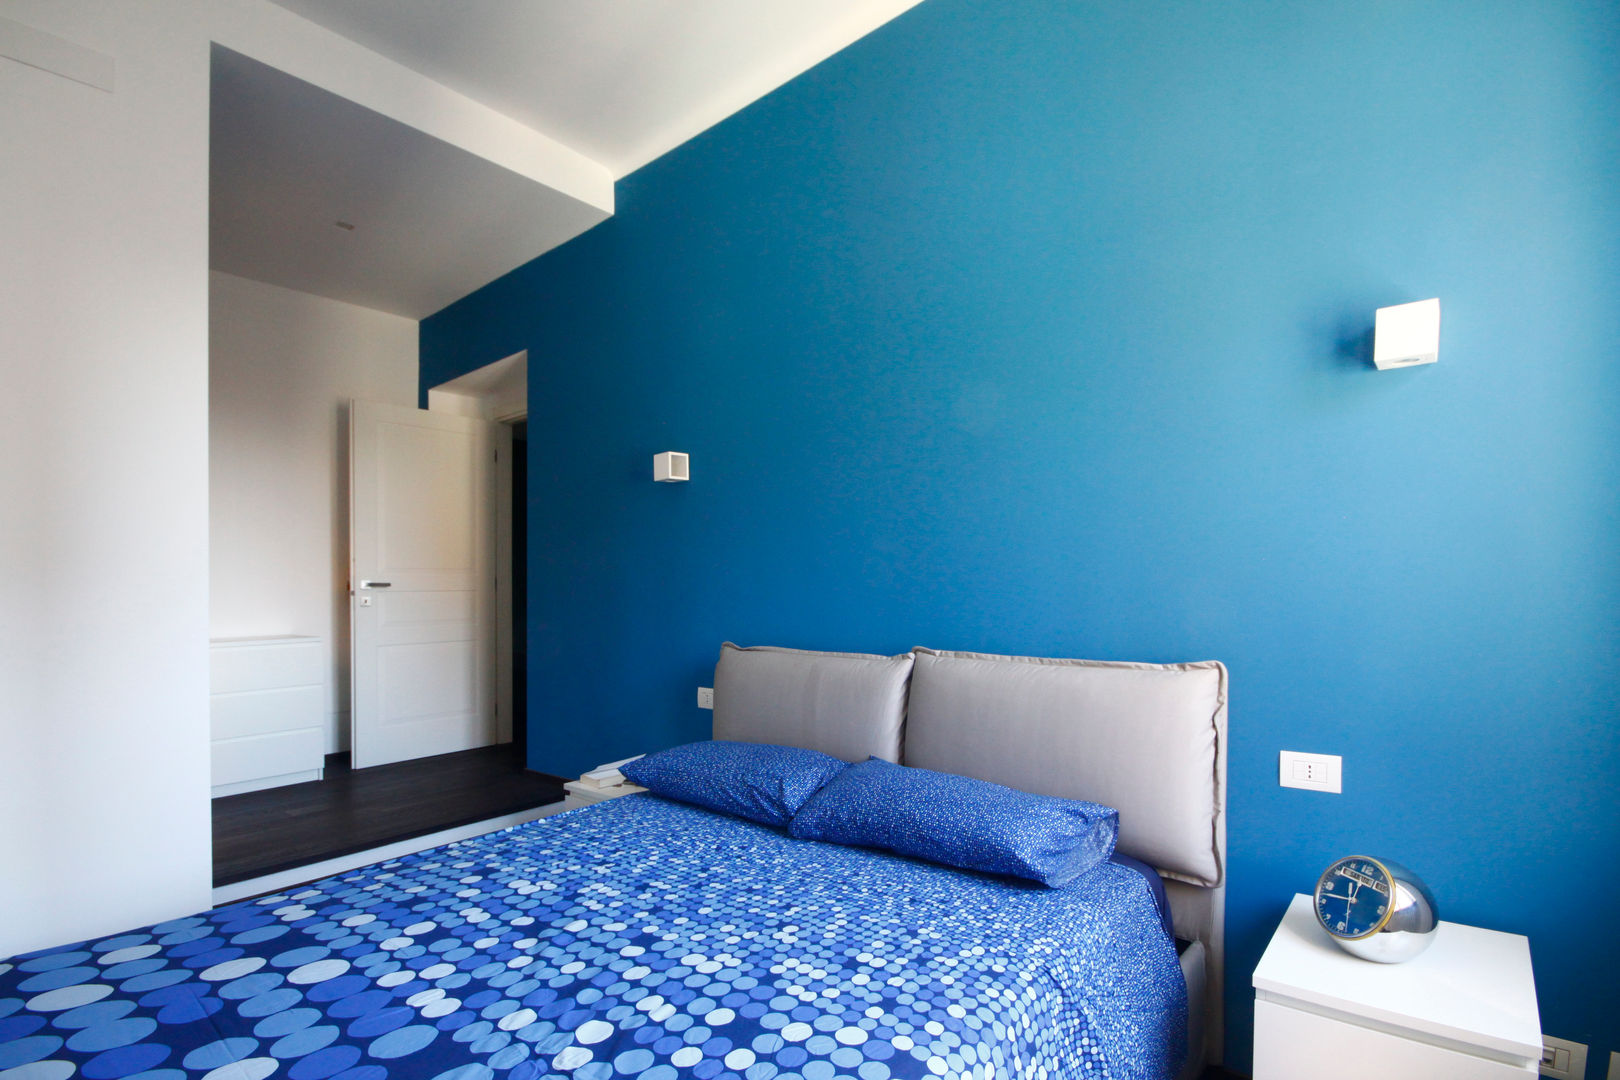 CASA MH, Andrea Orioli Andrea Orioli Minimalist bedroom Blue